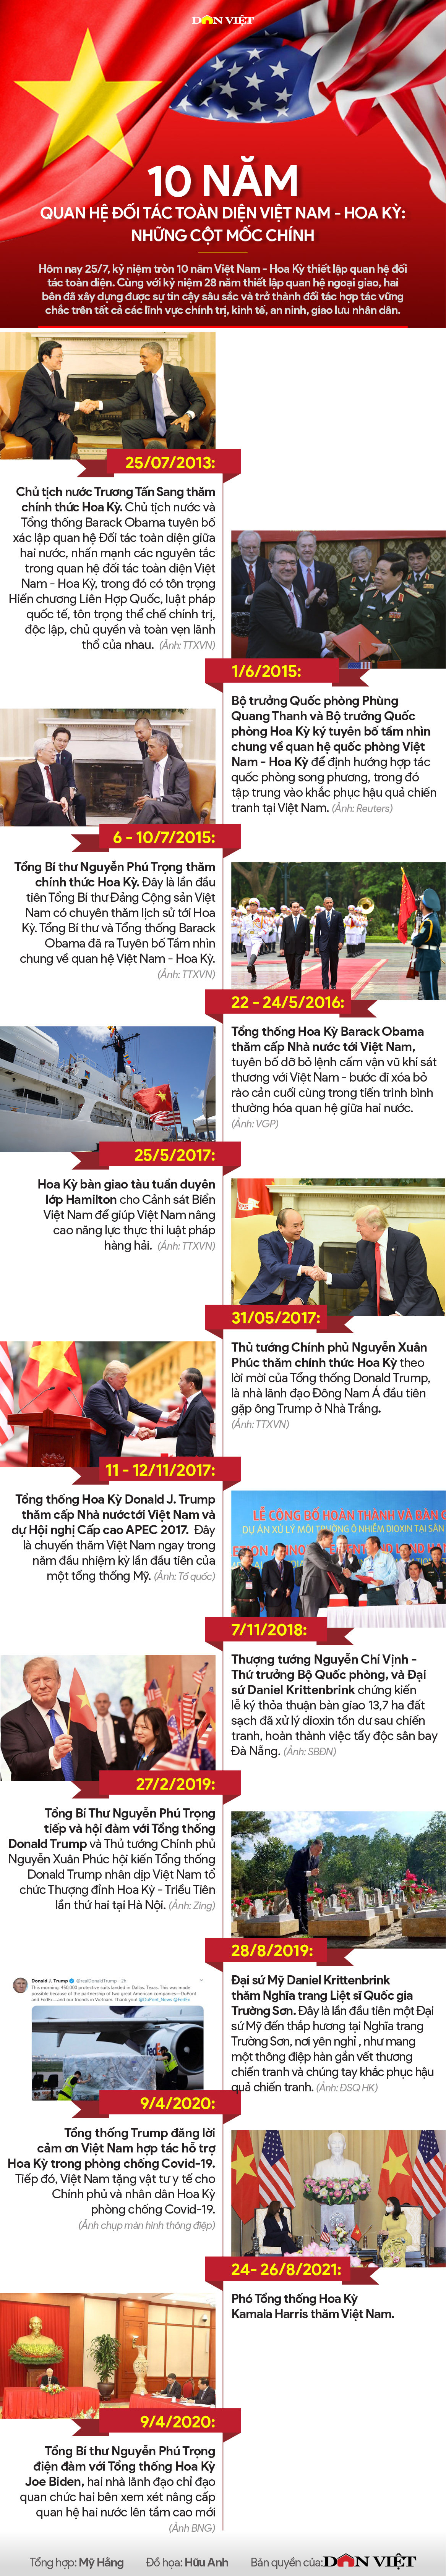 10 năm quan hệ đối tác toàn diện Việt Nam - Hoa Kỳ: Sức bật đáng kinh ngạc - Ảnh 1.